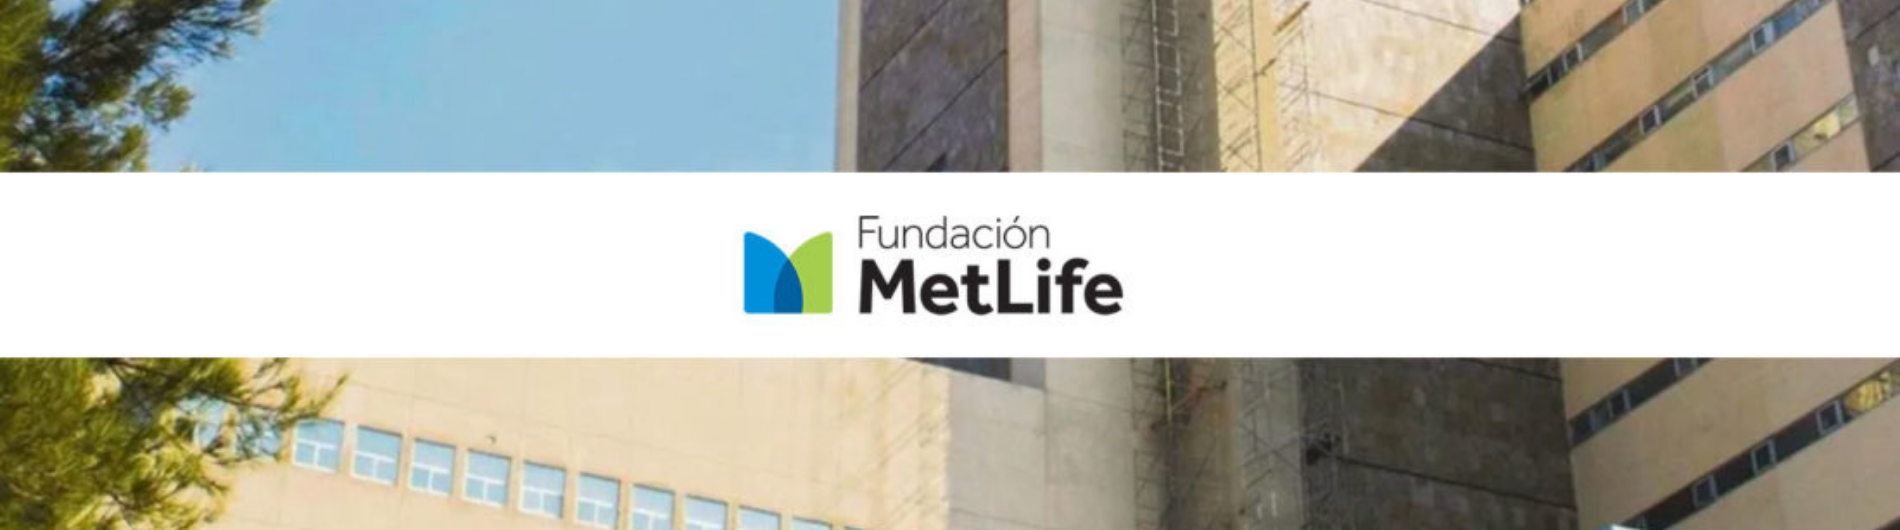 Fundación Metlife